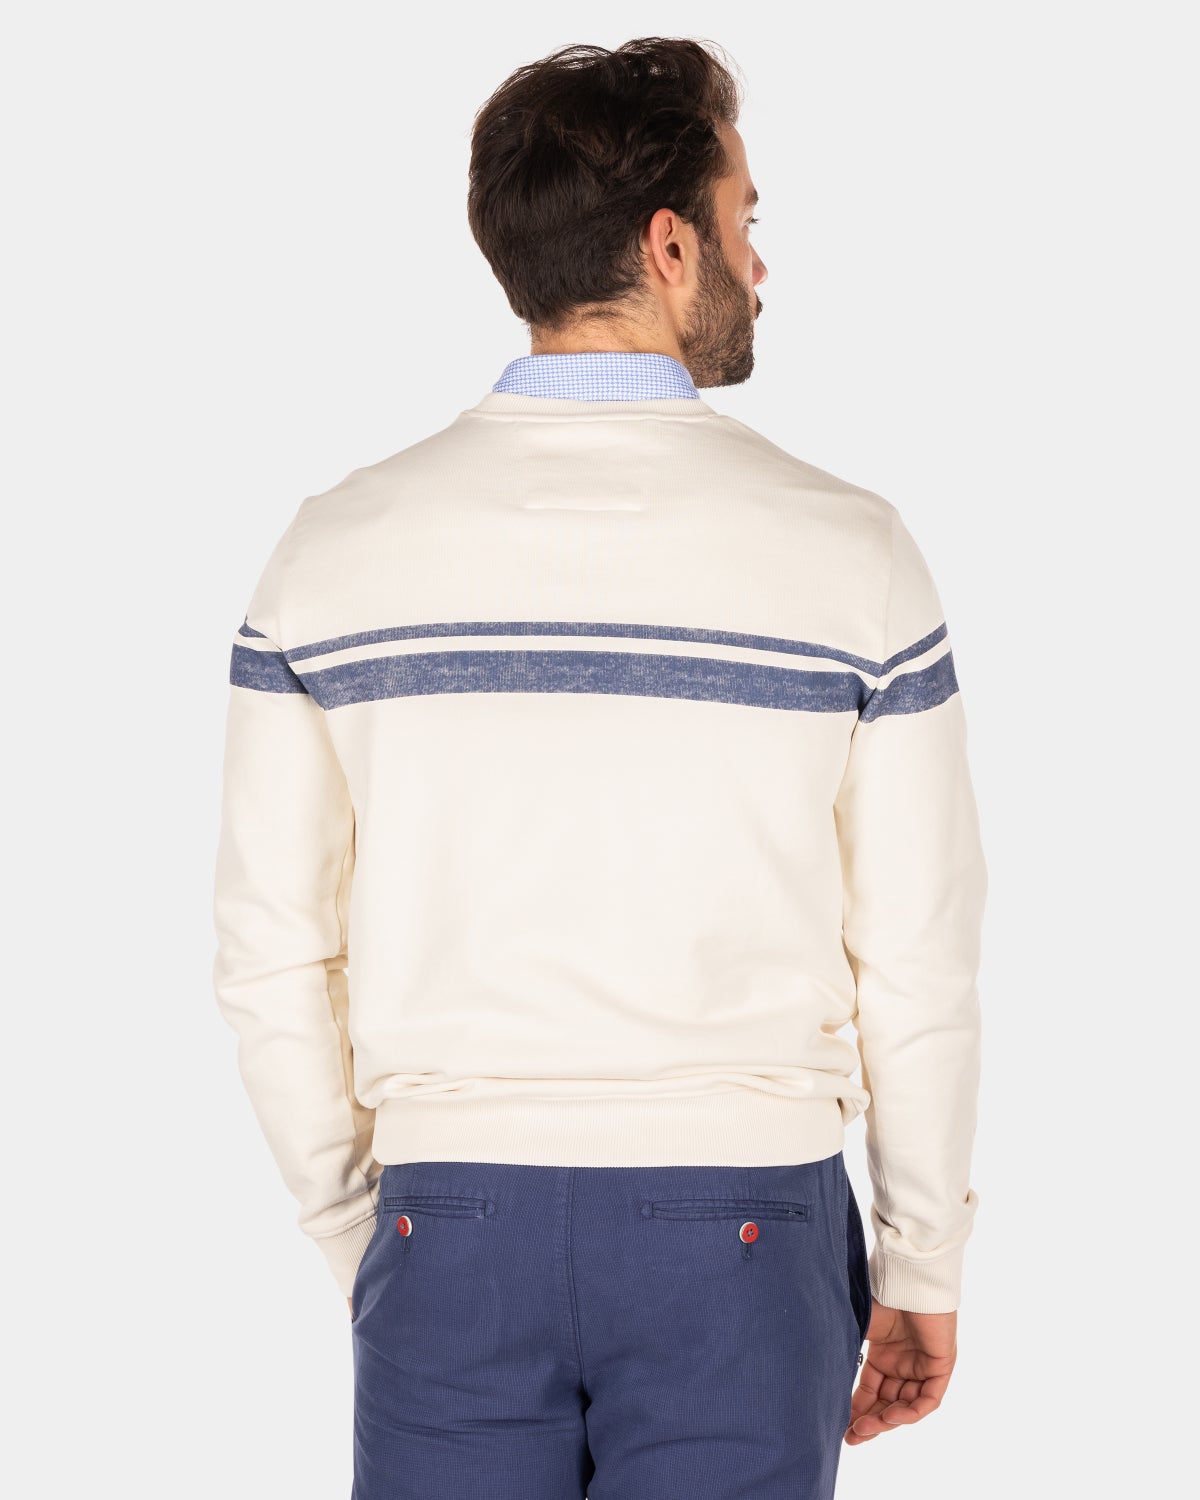 White crew neck sweater with blue stripe - Cream